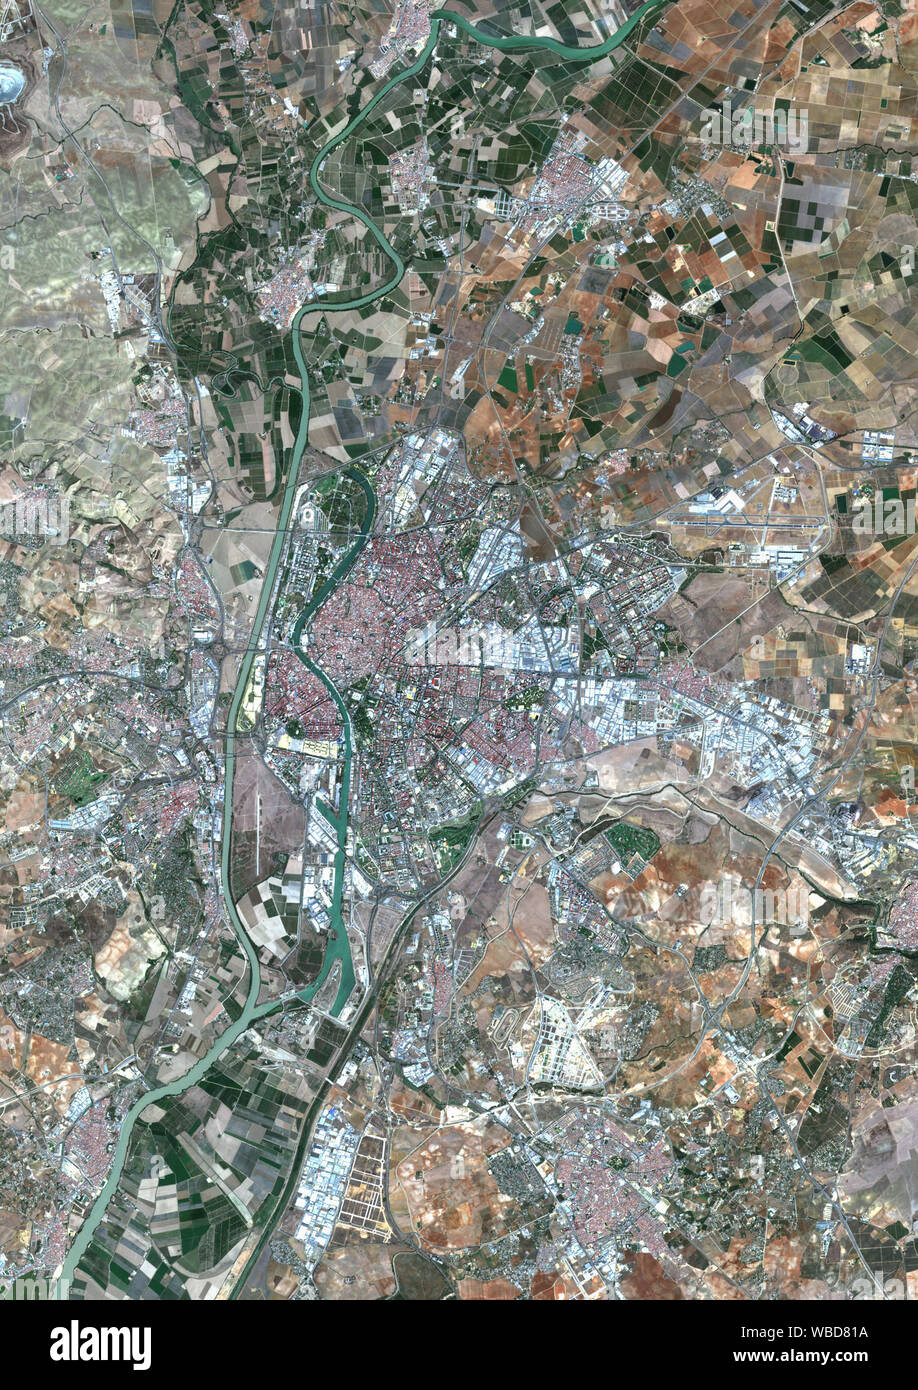 Colore immagine satellitare di Siviglia, Spagna. Immagine raccolta su Ottobre 4, 2018 da Sentinel-2 satelliti. Foto Stock